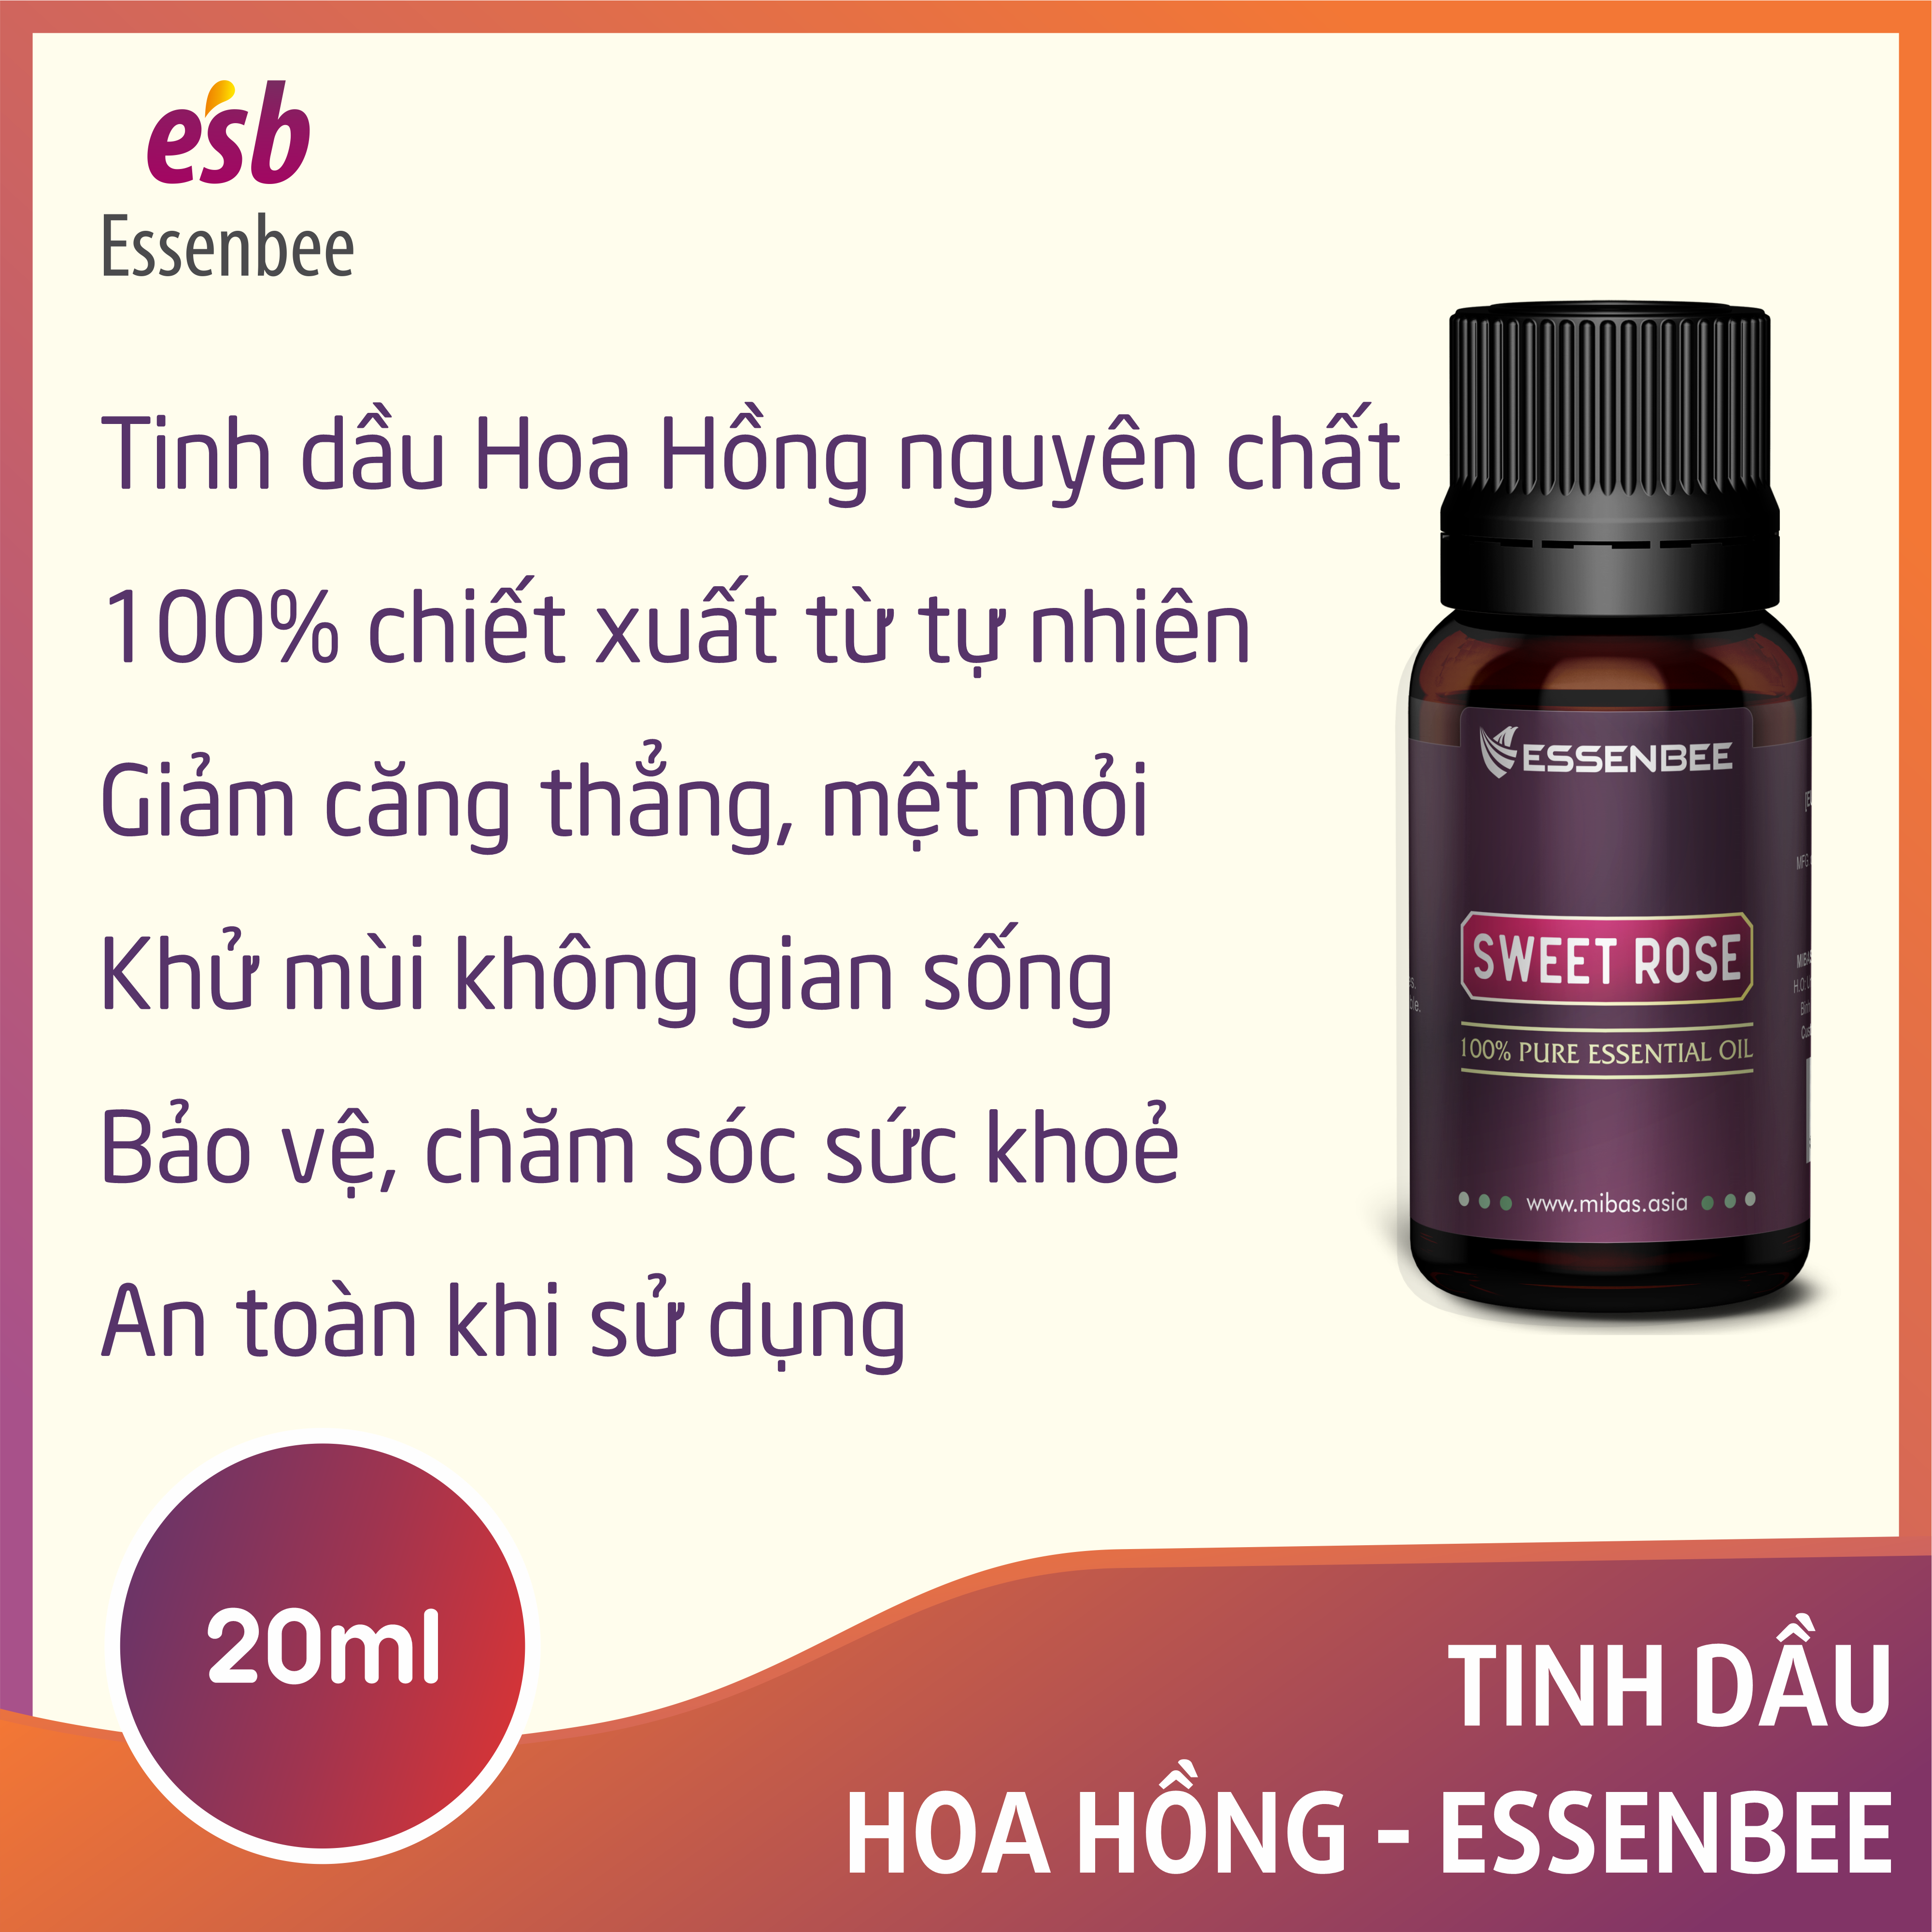 Tinh dầu thiên nhiên Hoa Hồng - Essenbee - 20ml - Giải tỏa căng thẳng, thư giãn tinh thần, giảm stress. Dưỡng ẩm cho da, làm mờ vết thâm và hỗ trợ điều trị quầng thâm mắt. Khử mùi và tạo bầu không khí trong lành.